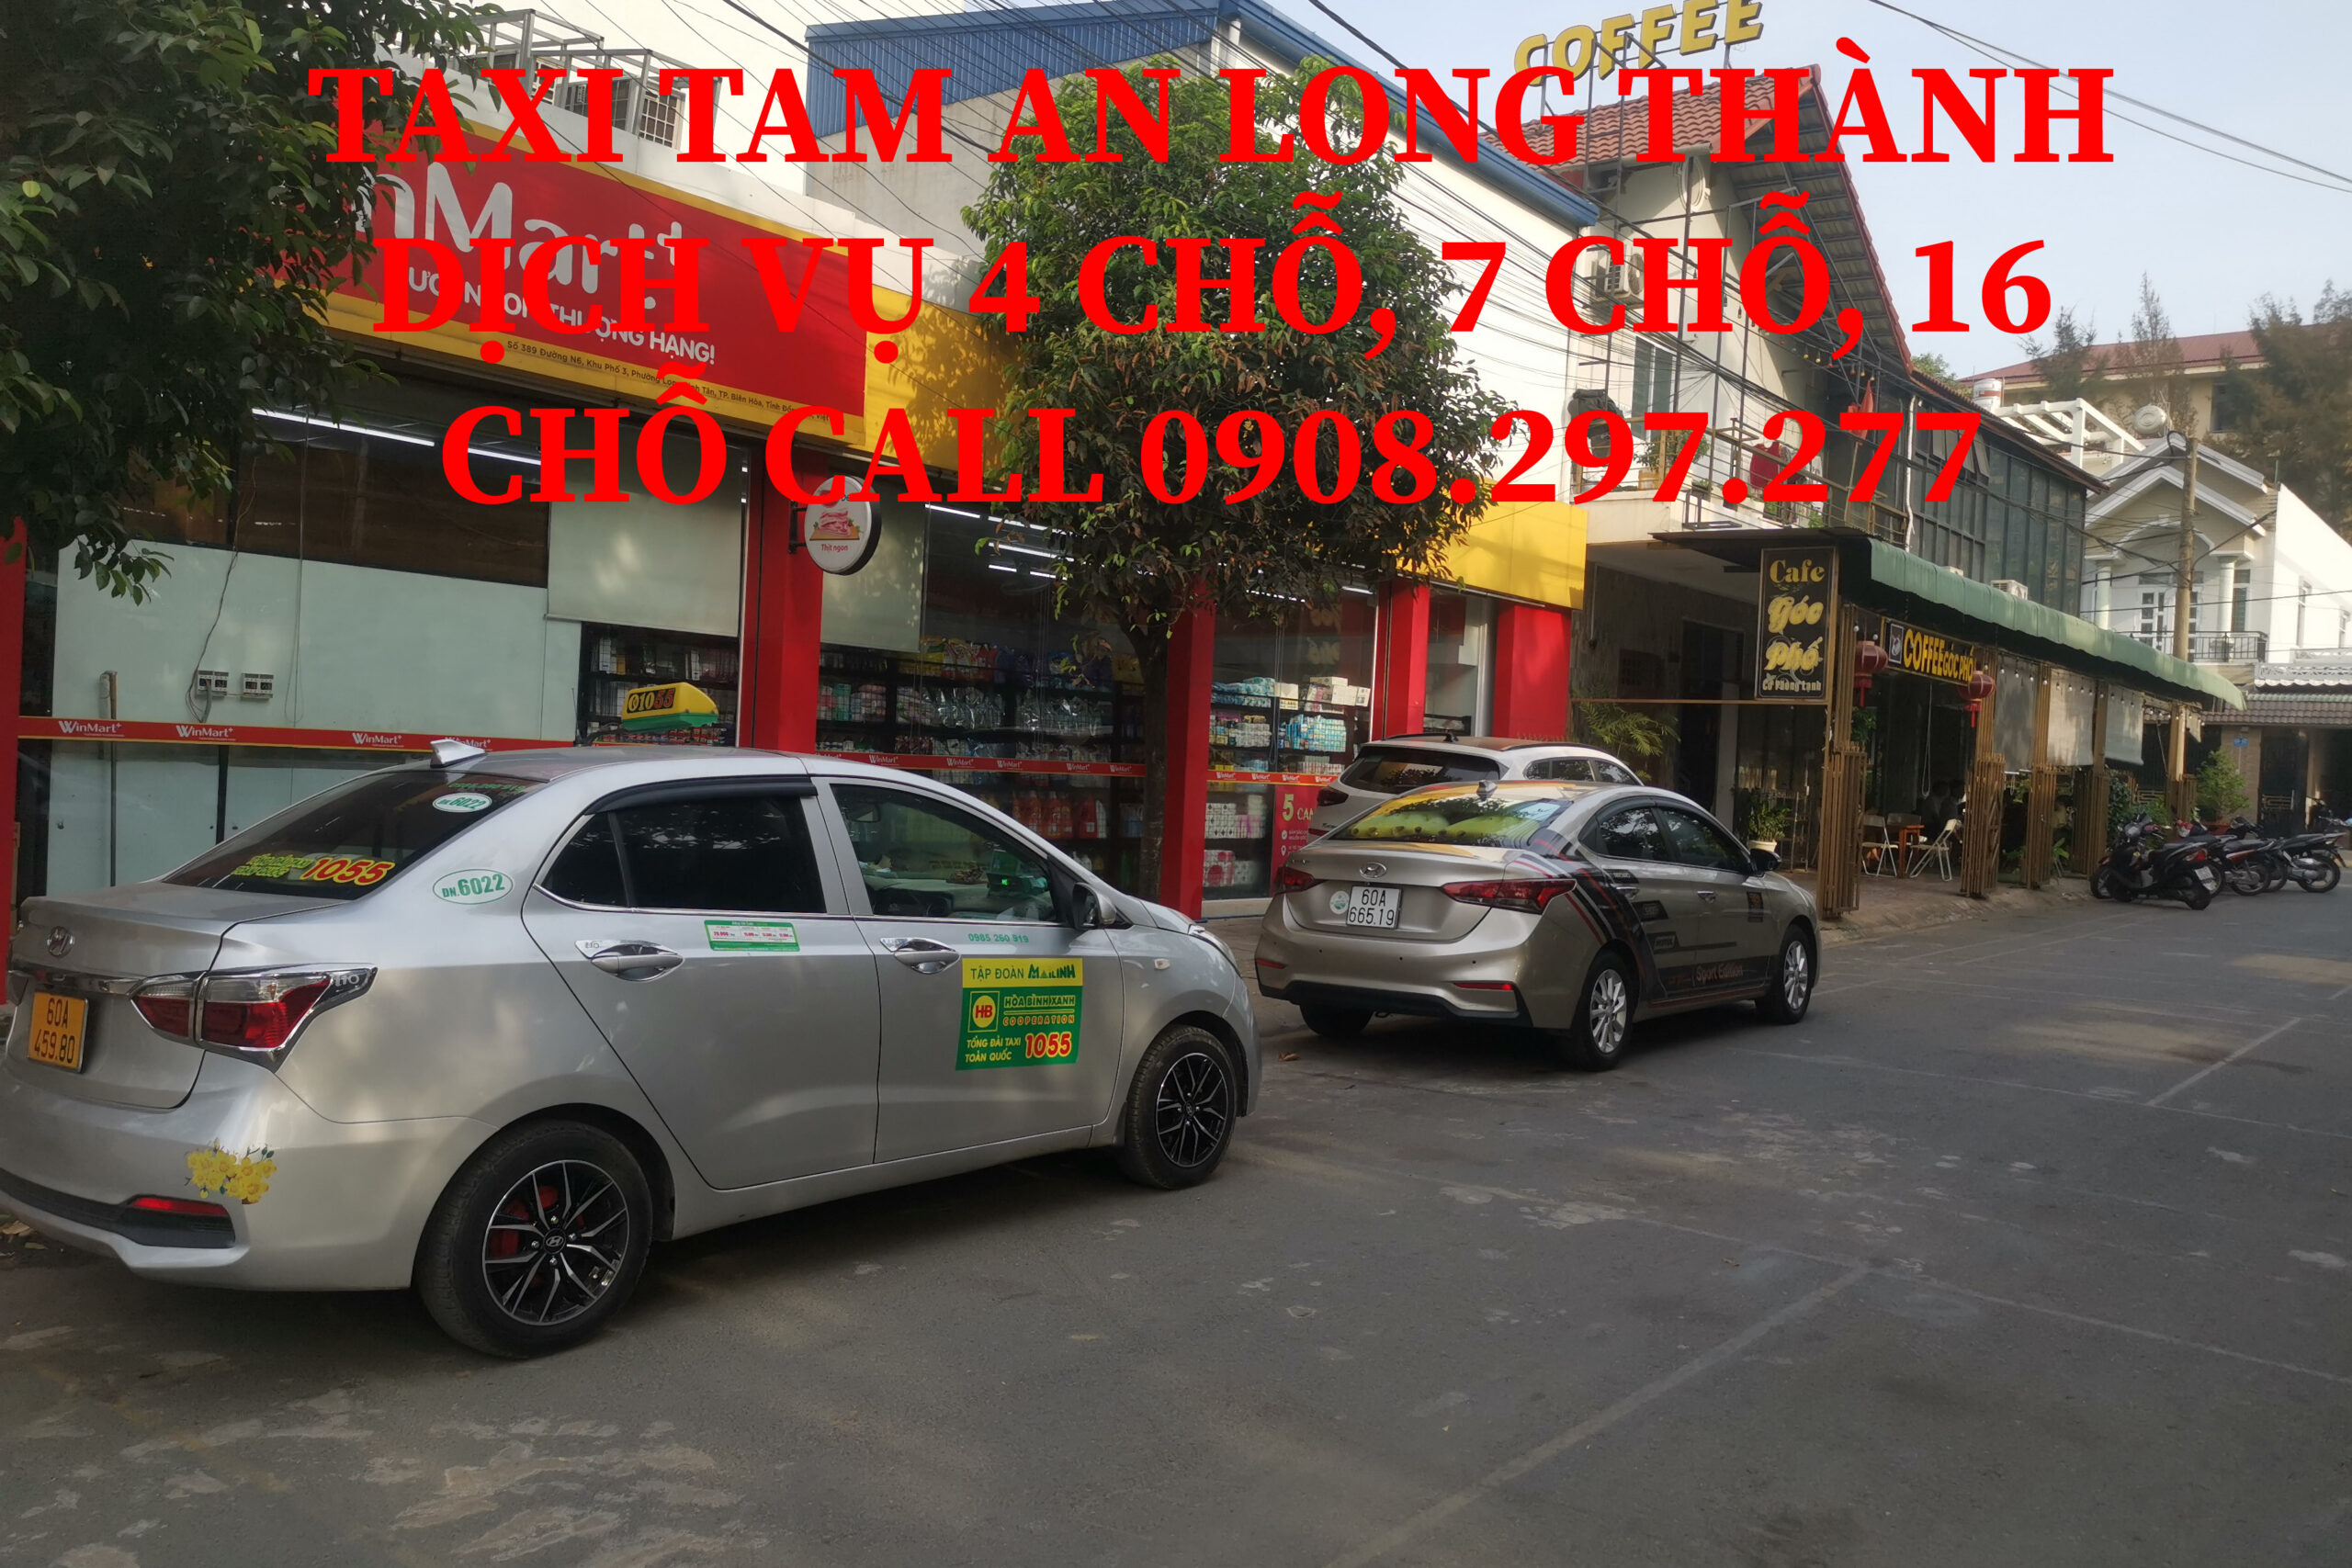 Vì sao nên lựa chọn dịch vụ taxi Tam An? 